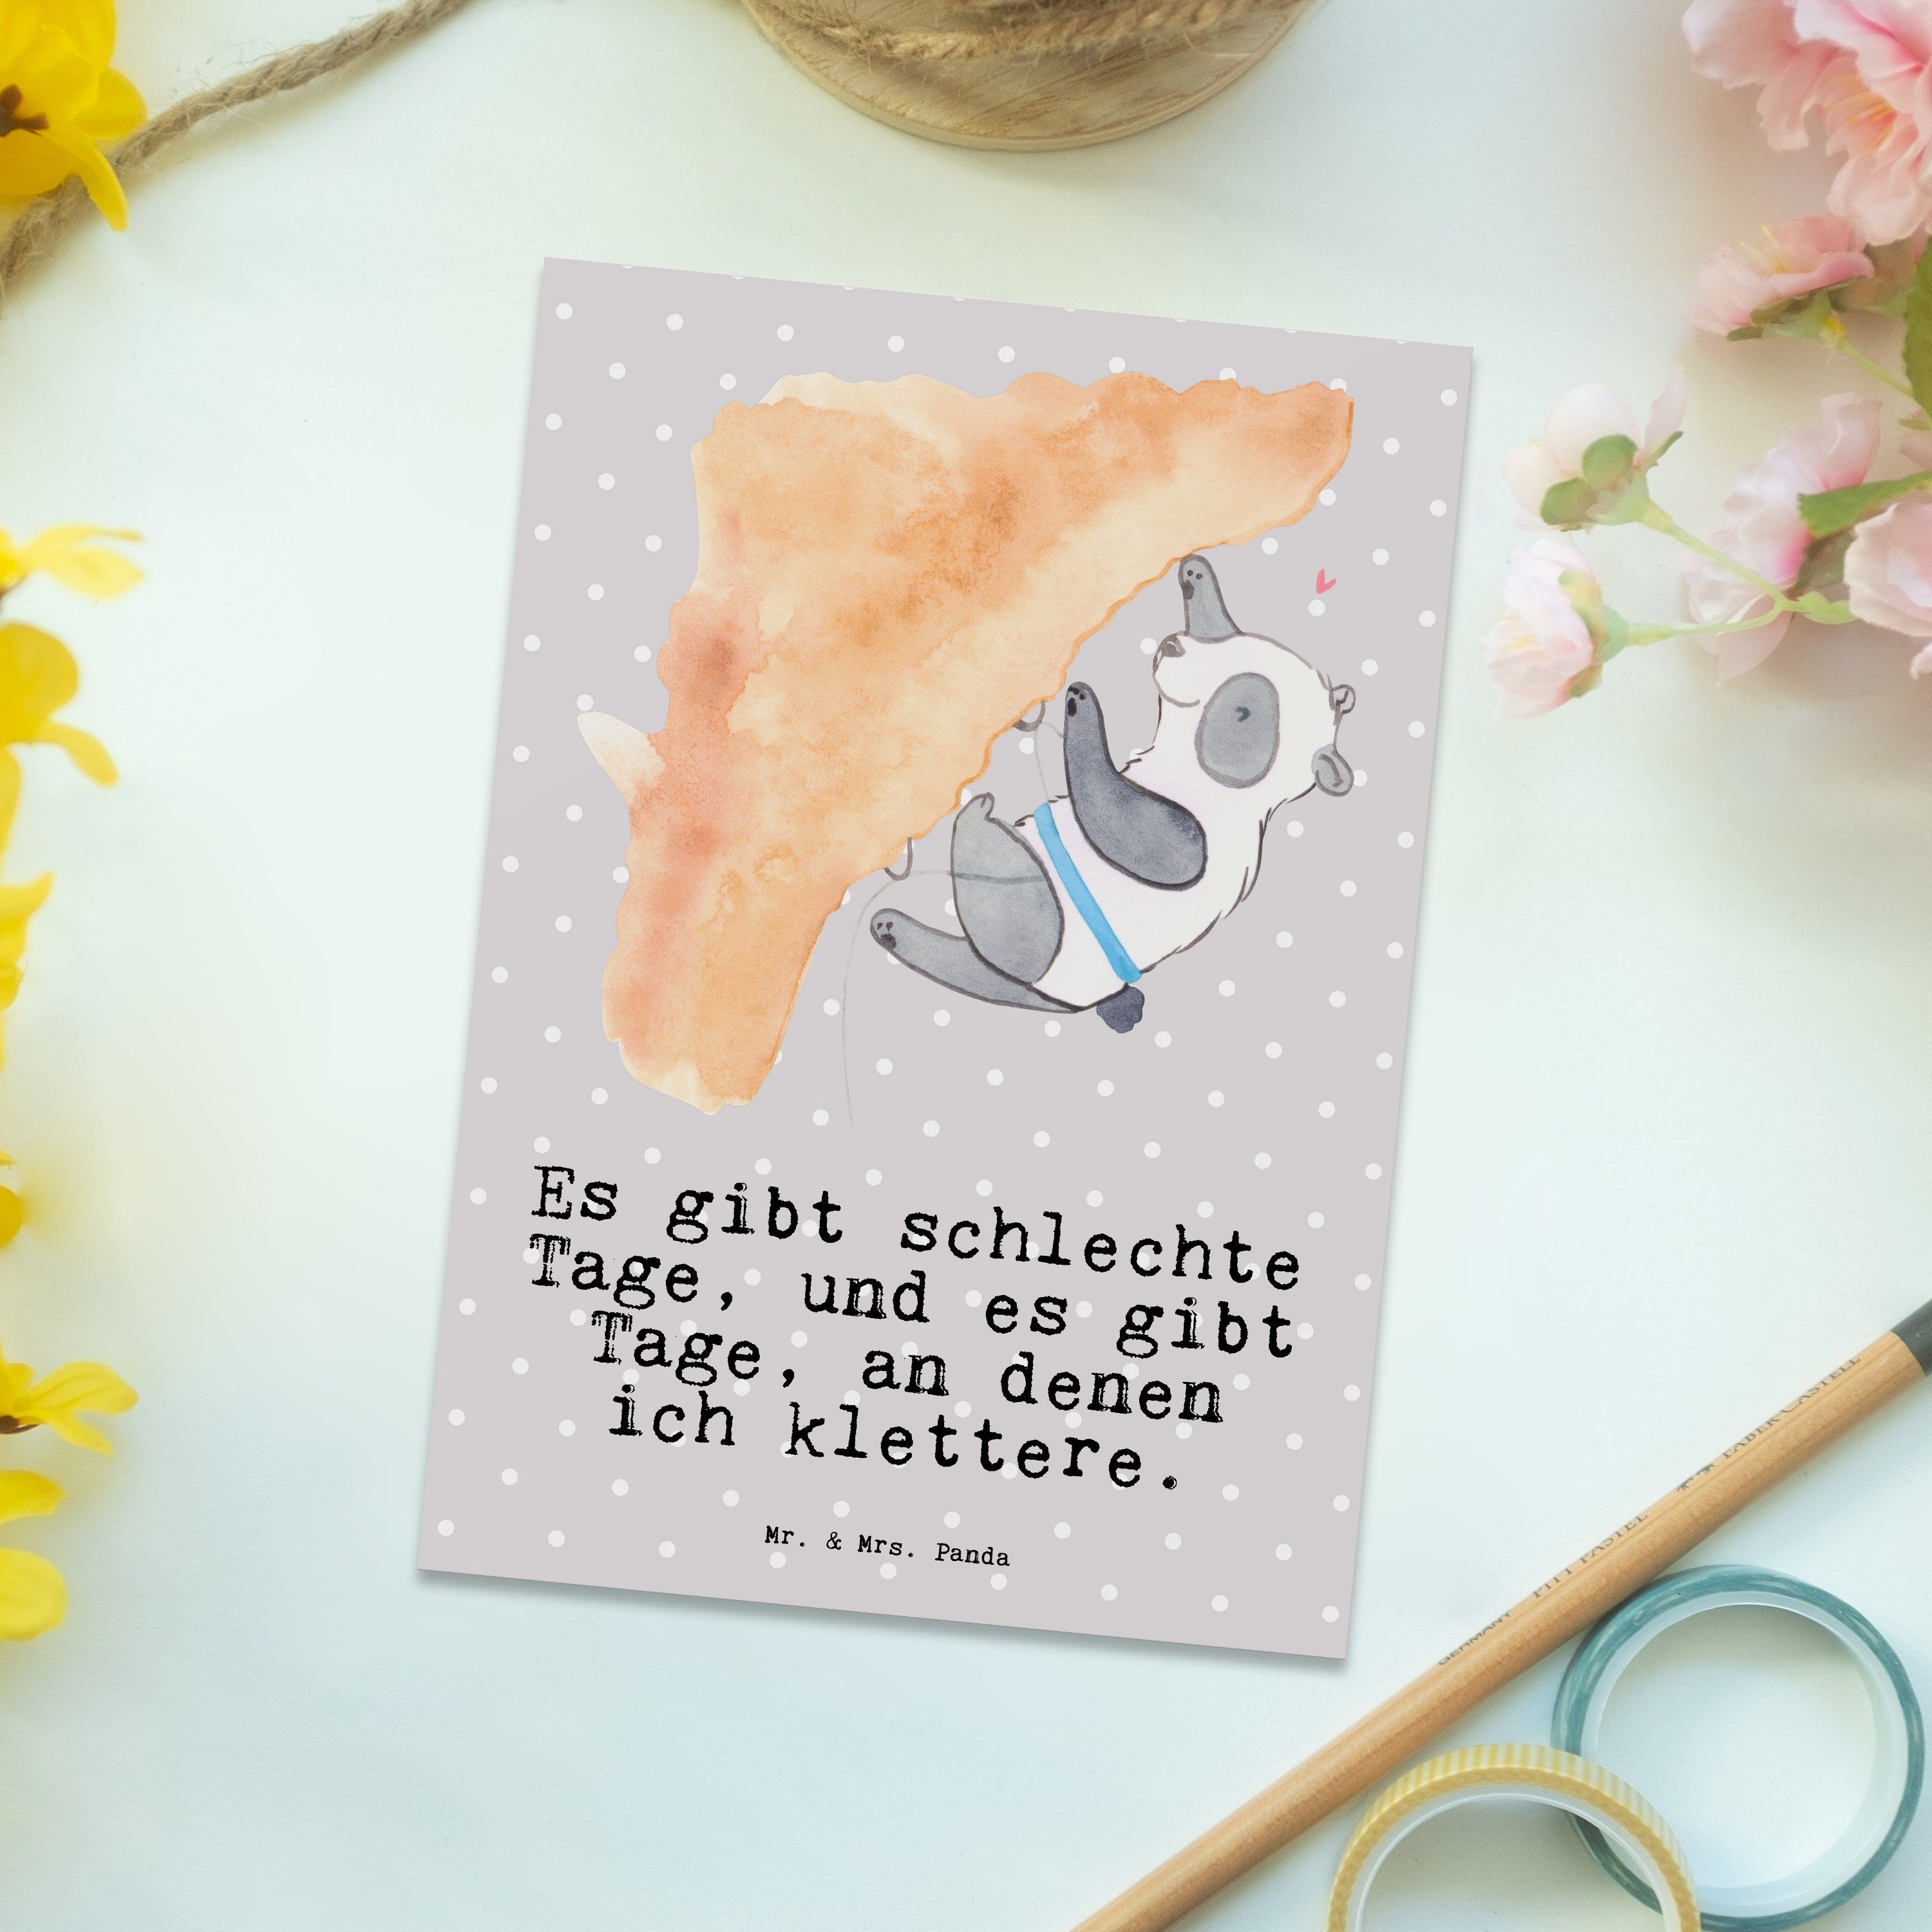 Mr. & Mrs. Panda Postkarte Panda Klettern Tage - Grau Pastell - Geschenk, Schenken, Karte, Grußk